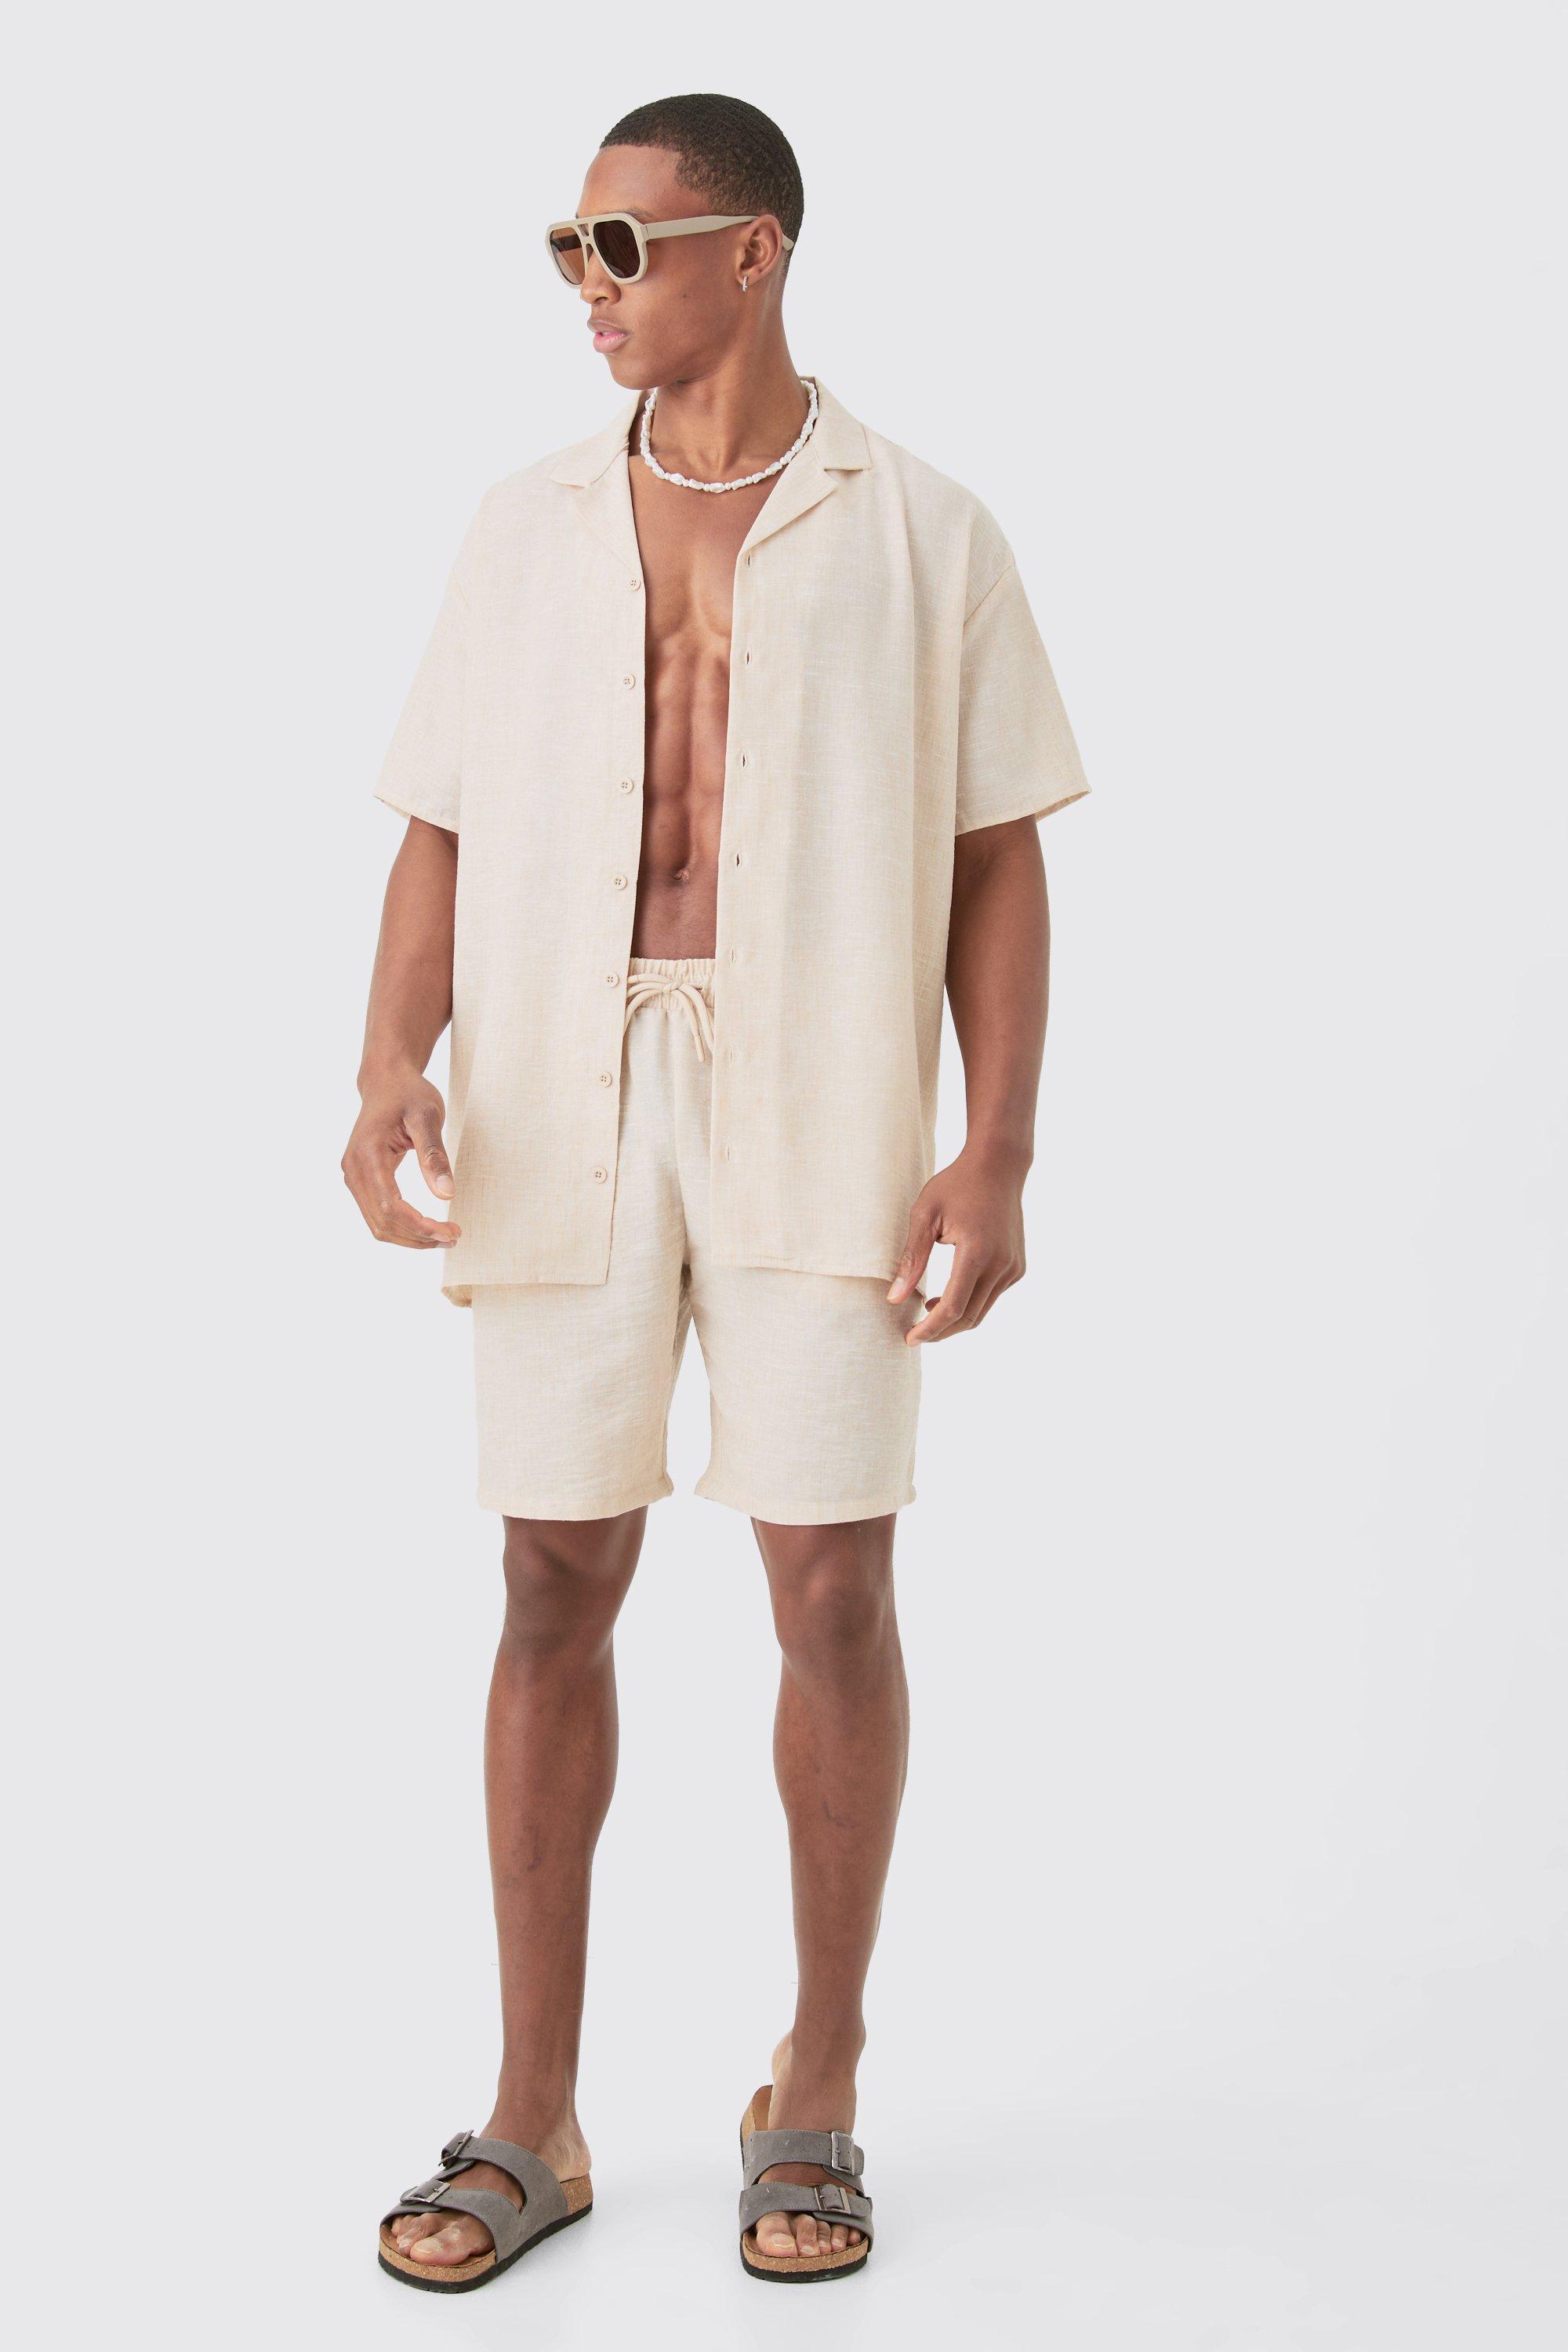 Image of Oversized Linen Look Shirt & Short, Beige